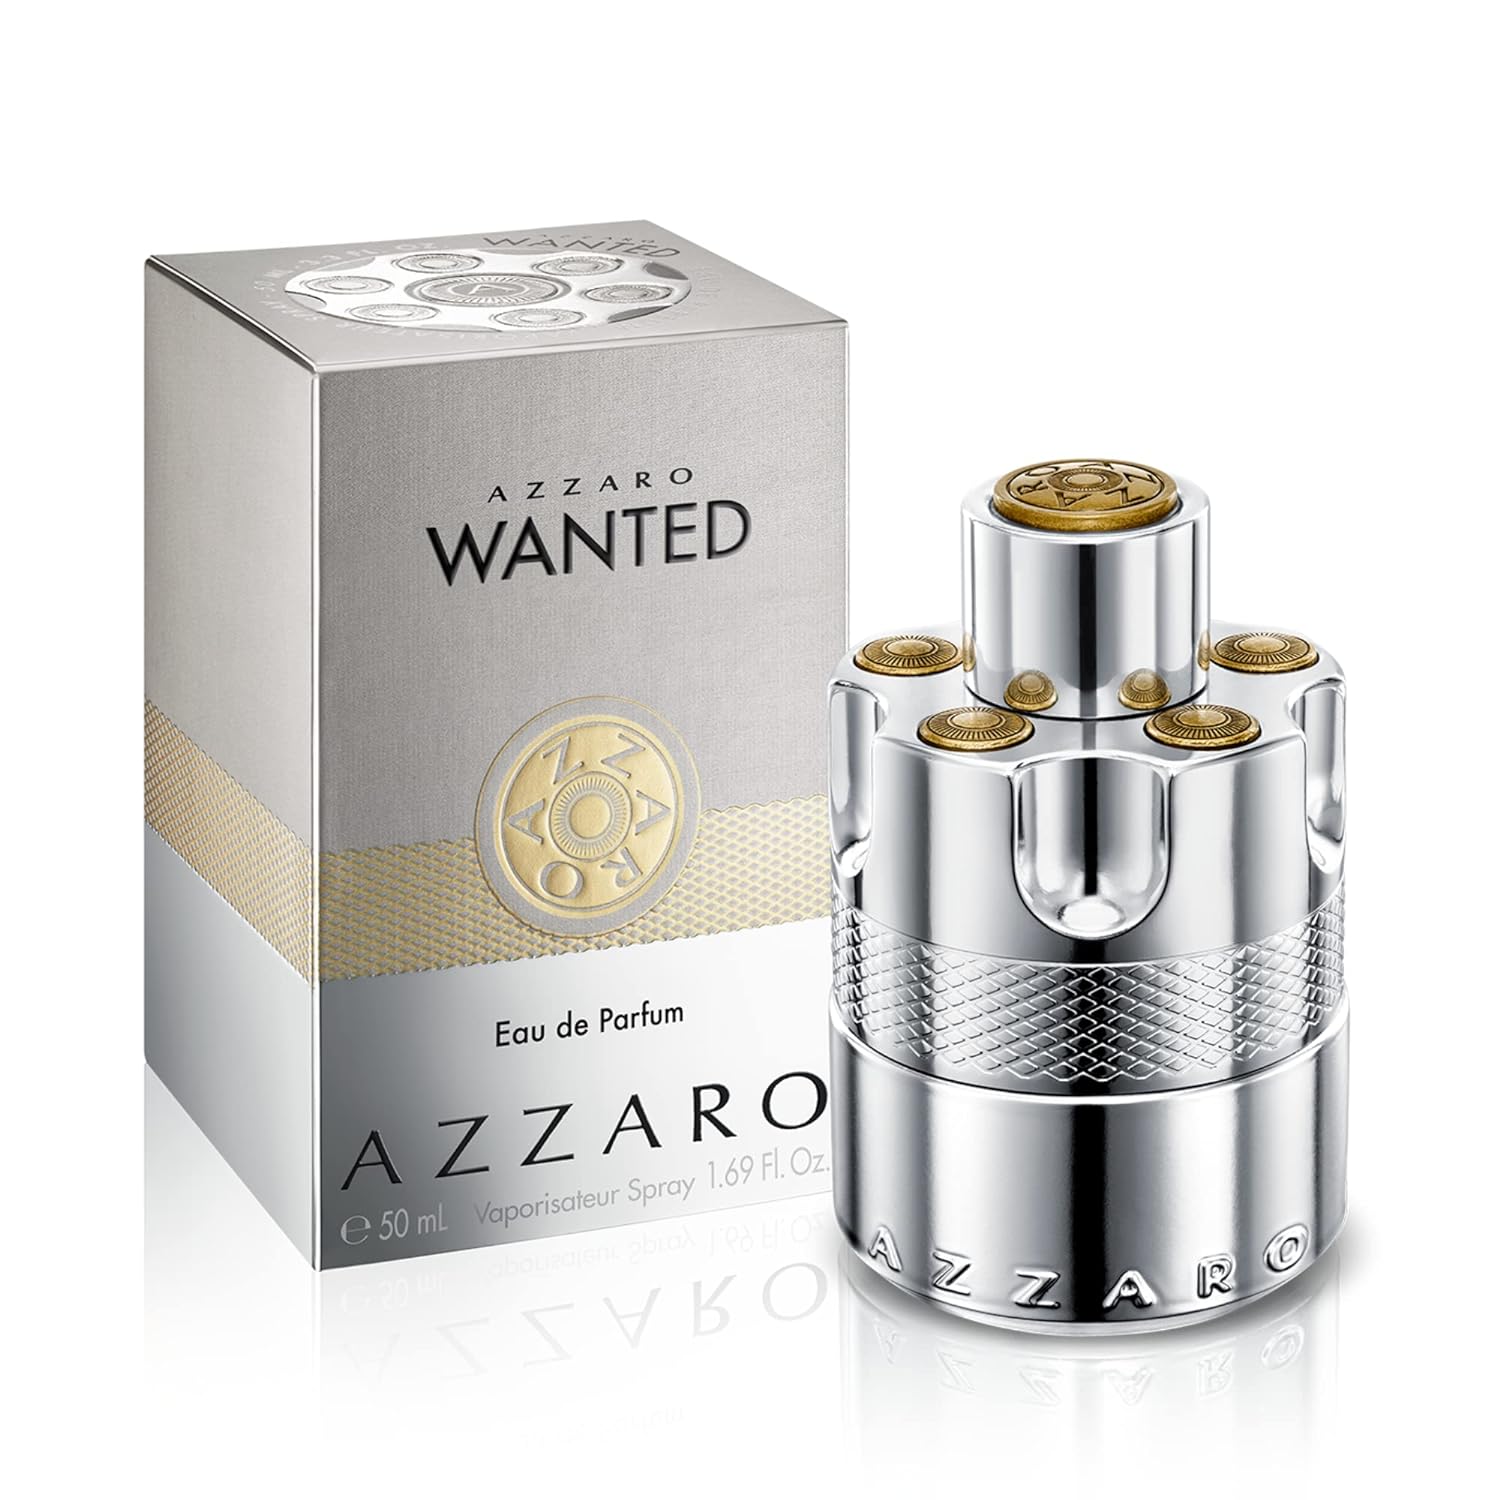 Perfume energizante e intensa para hombre Azzaro 